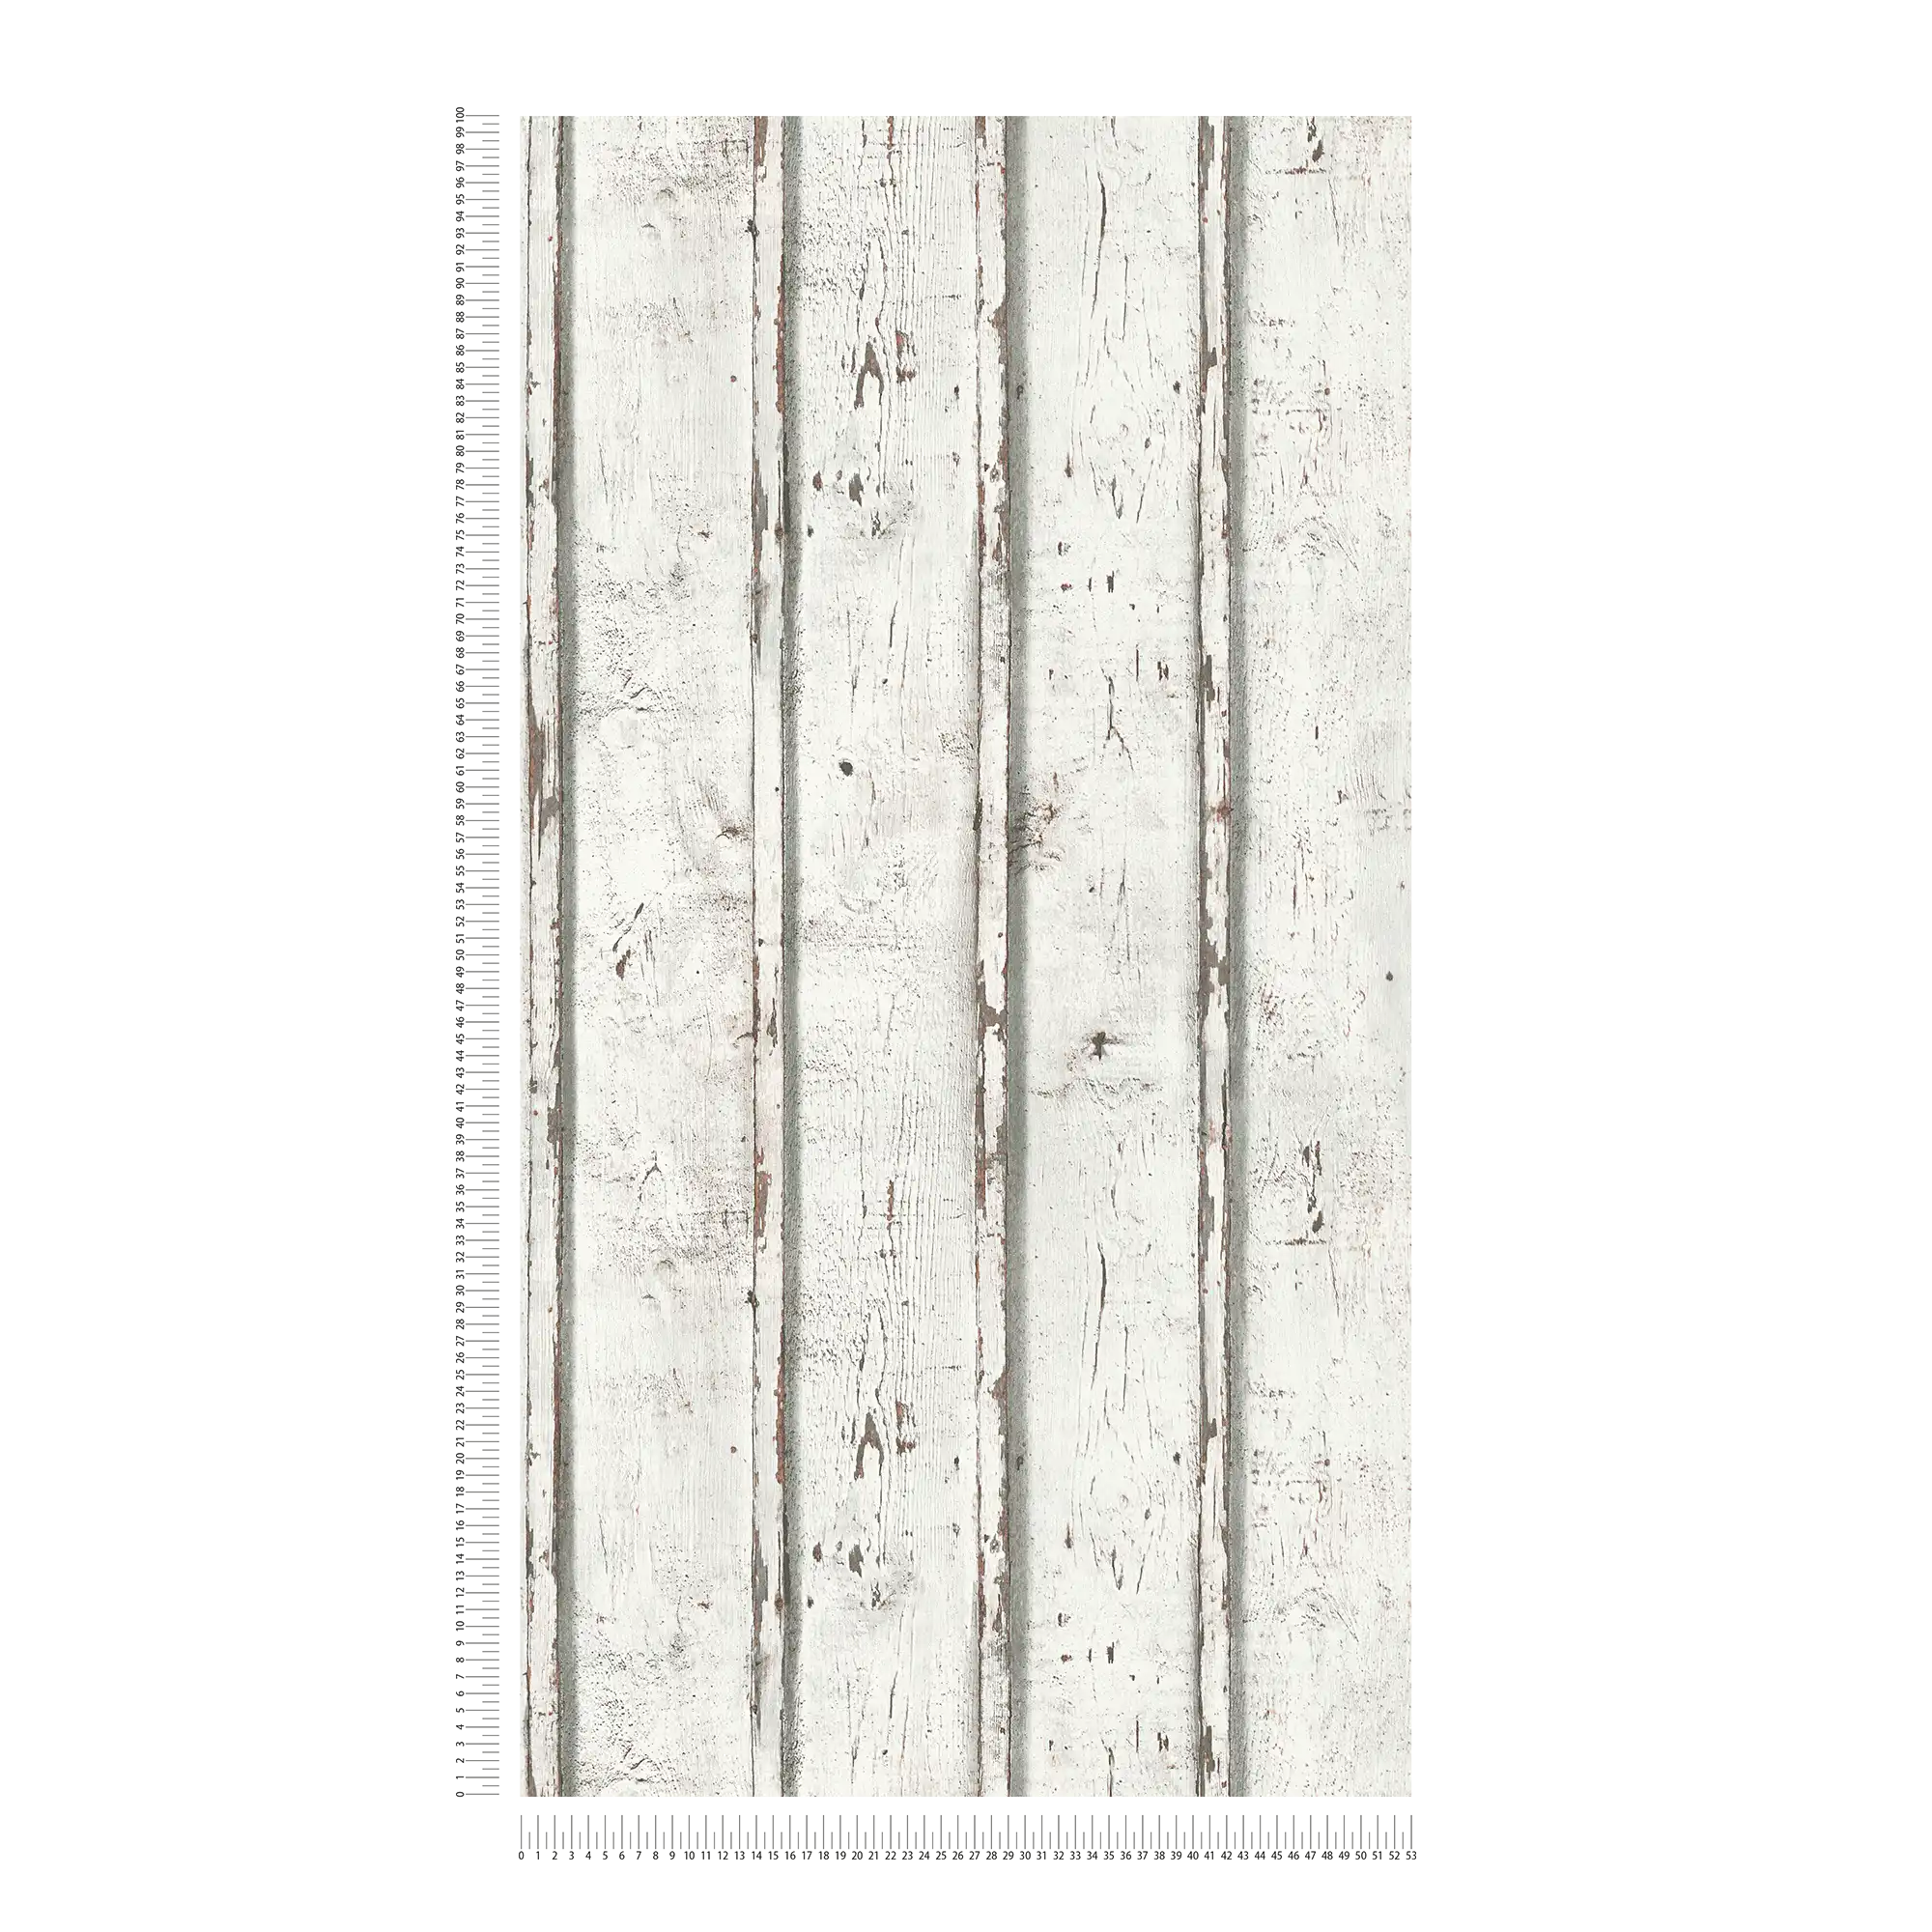             Carta da parati in legno in look usato con tavole di legno invecchiate dalle intemperie - bianco, crema, grigio
        